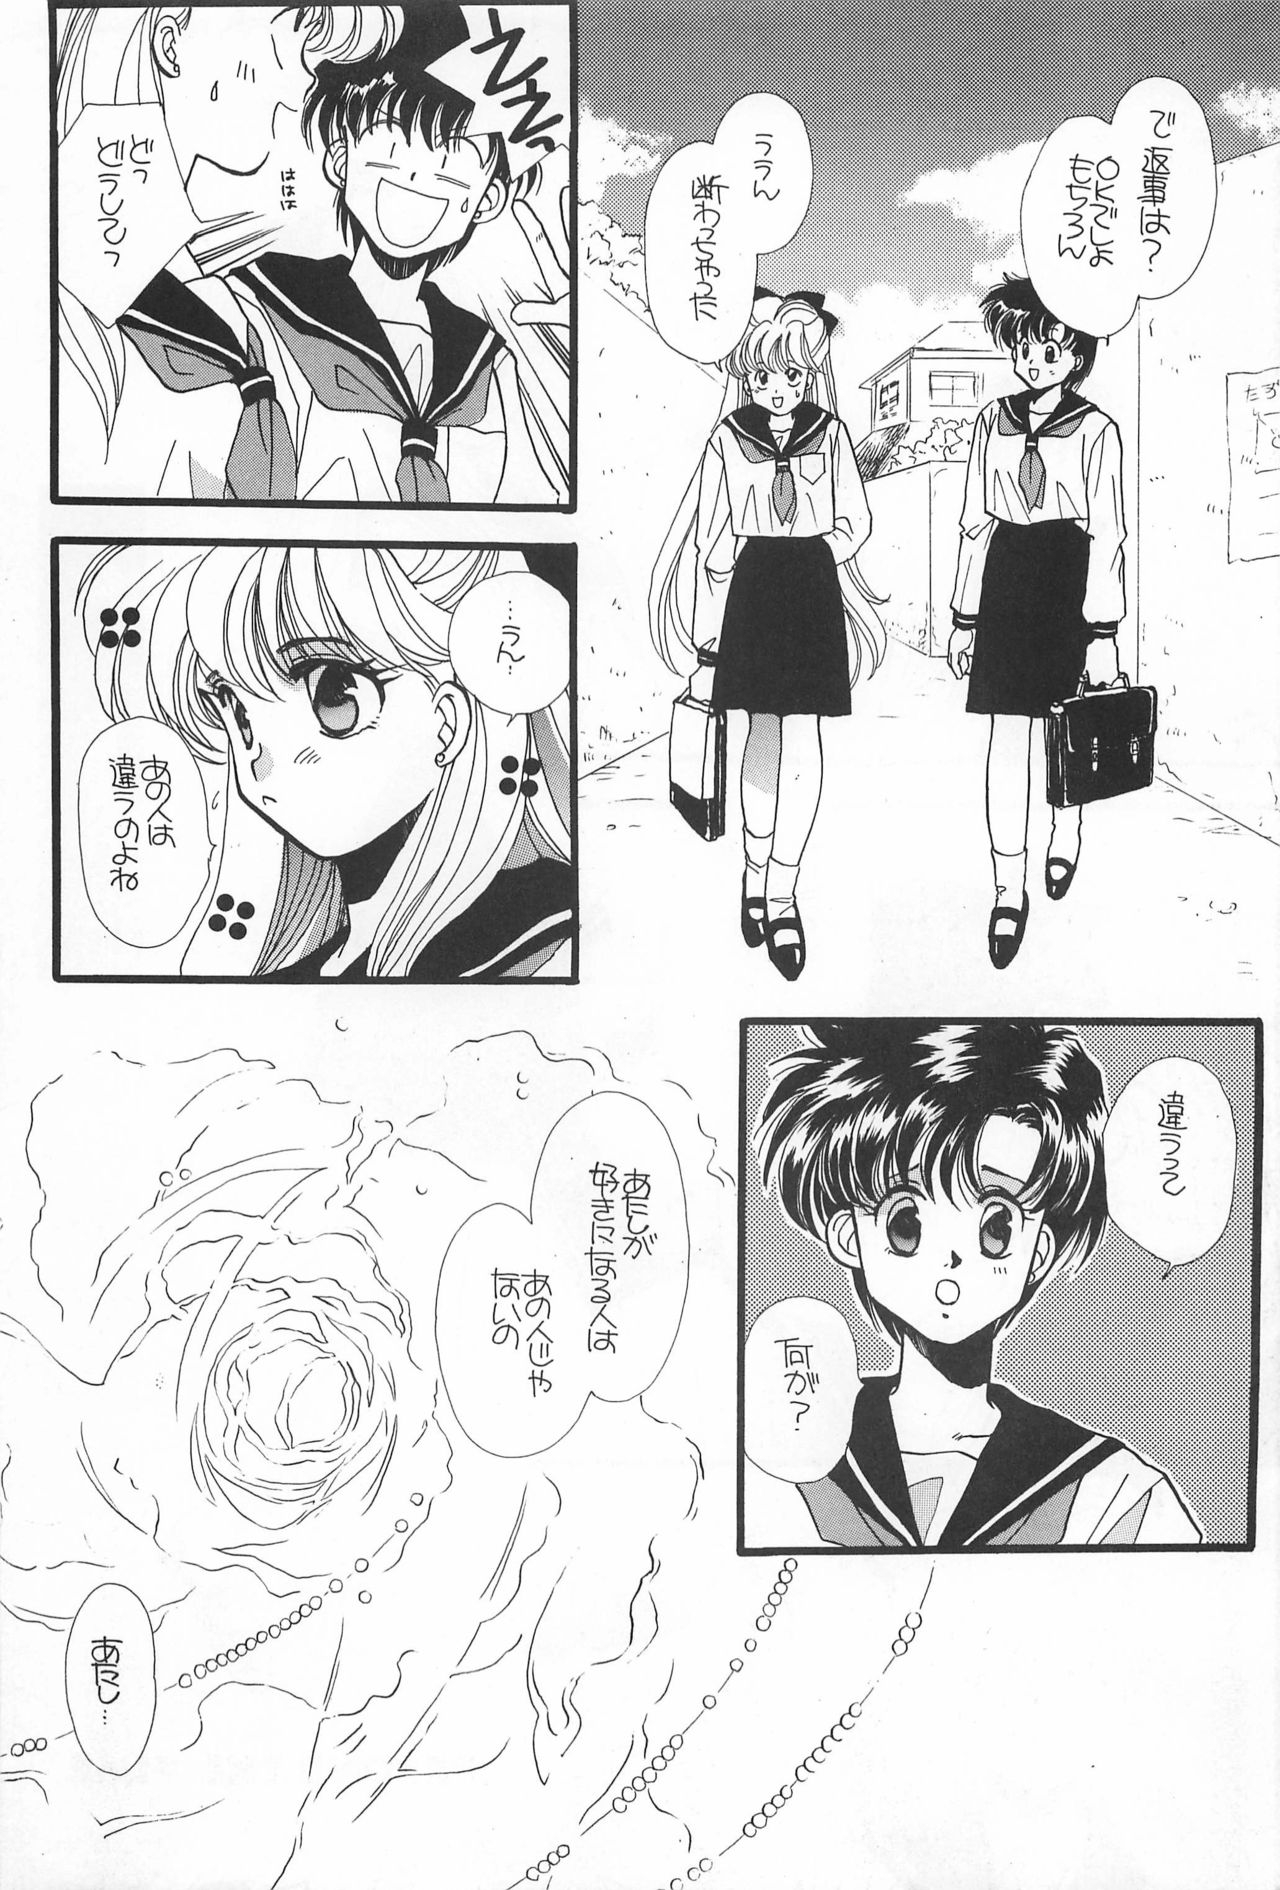 [Hello World (Muttri Moony)] Kaze no You ni Yume no You ni - Sailor Moon Collection (Sailor Moon) 73